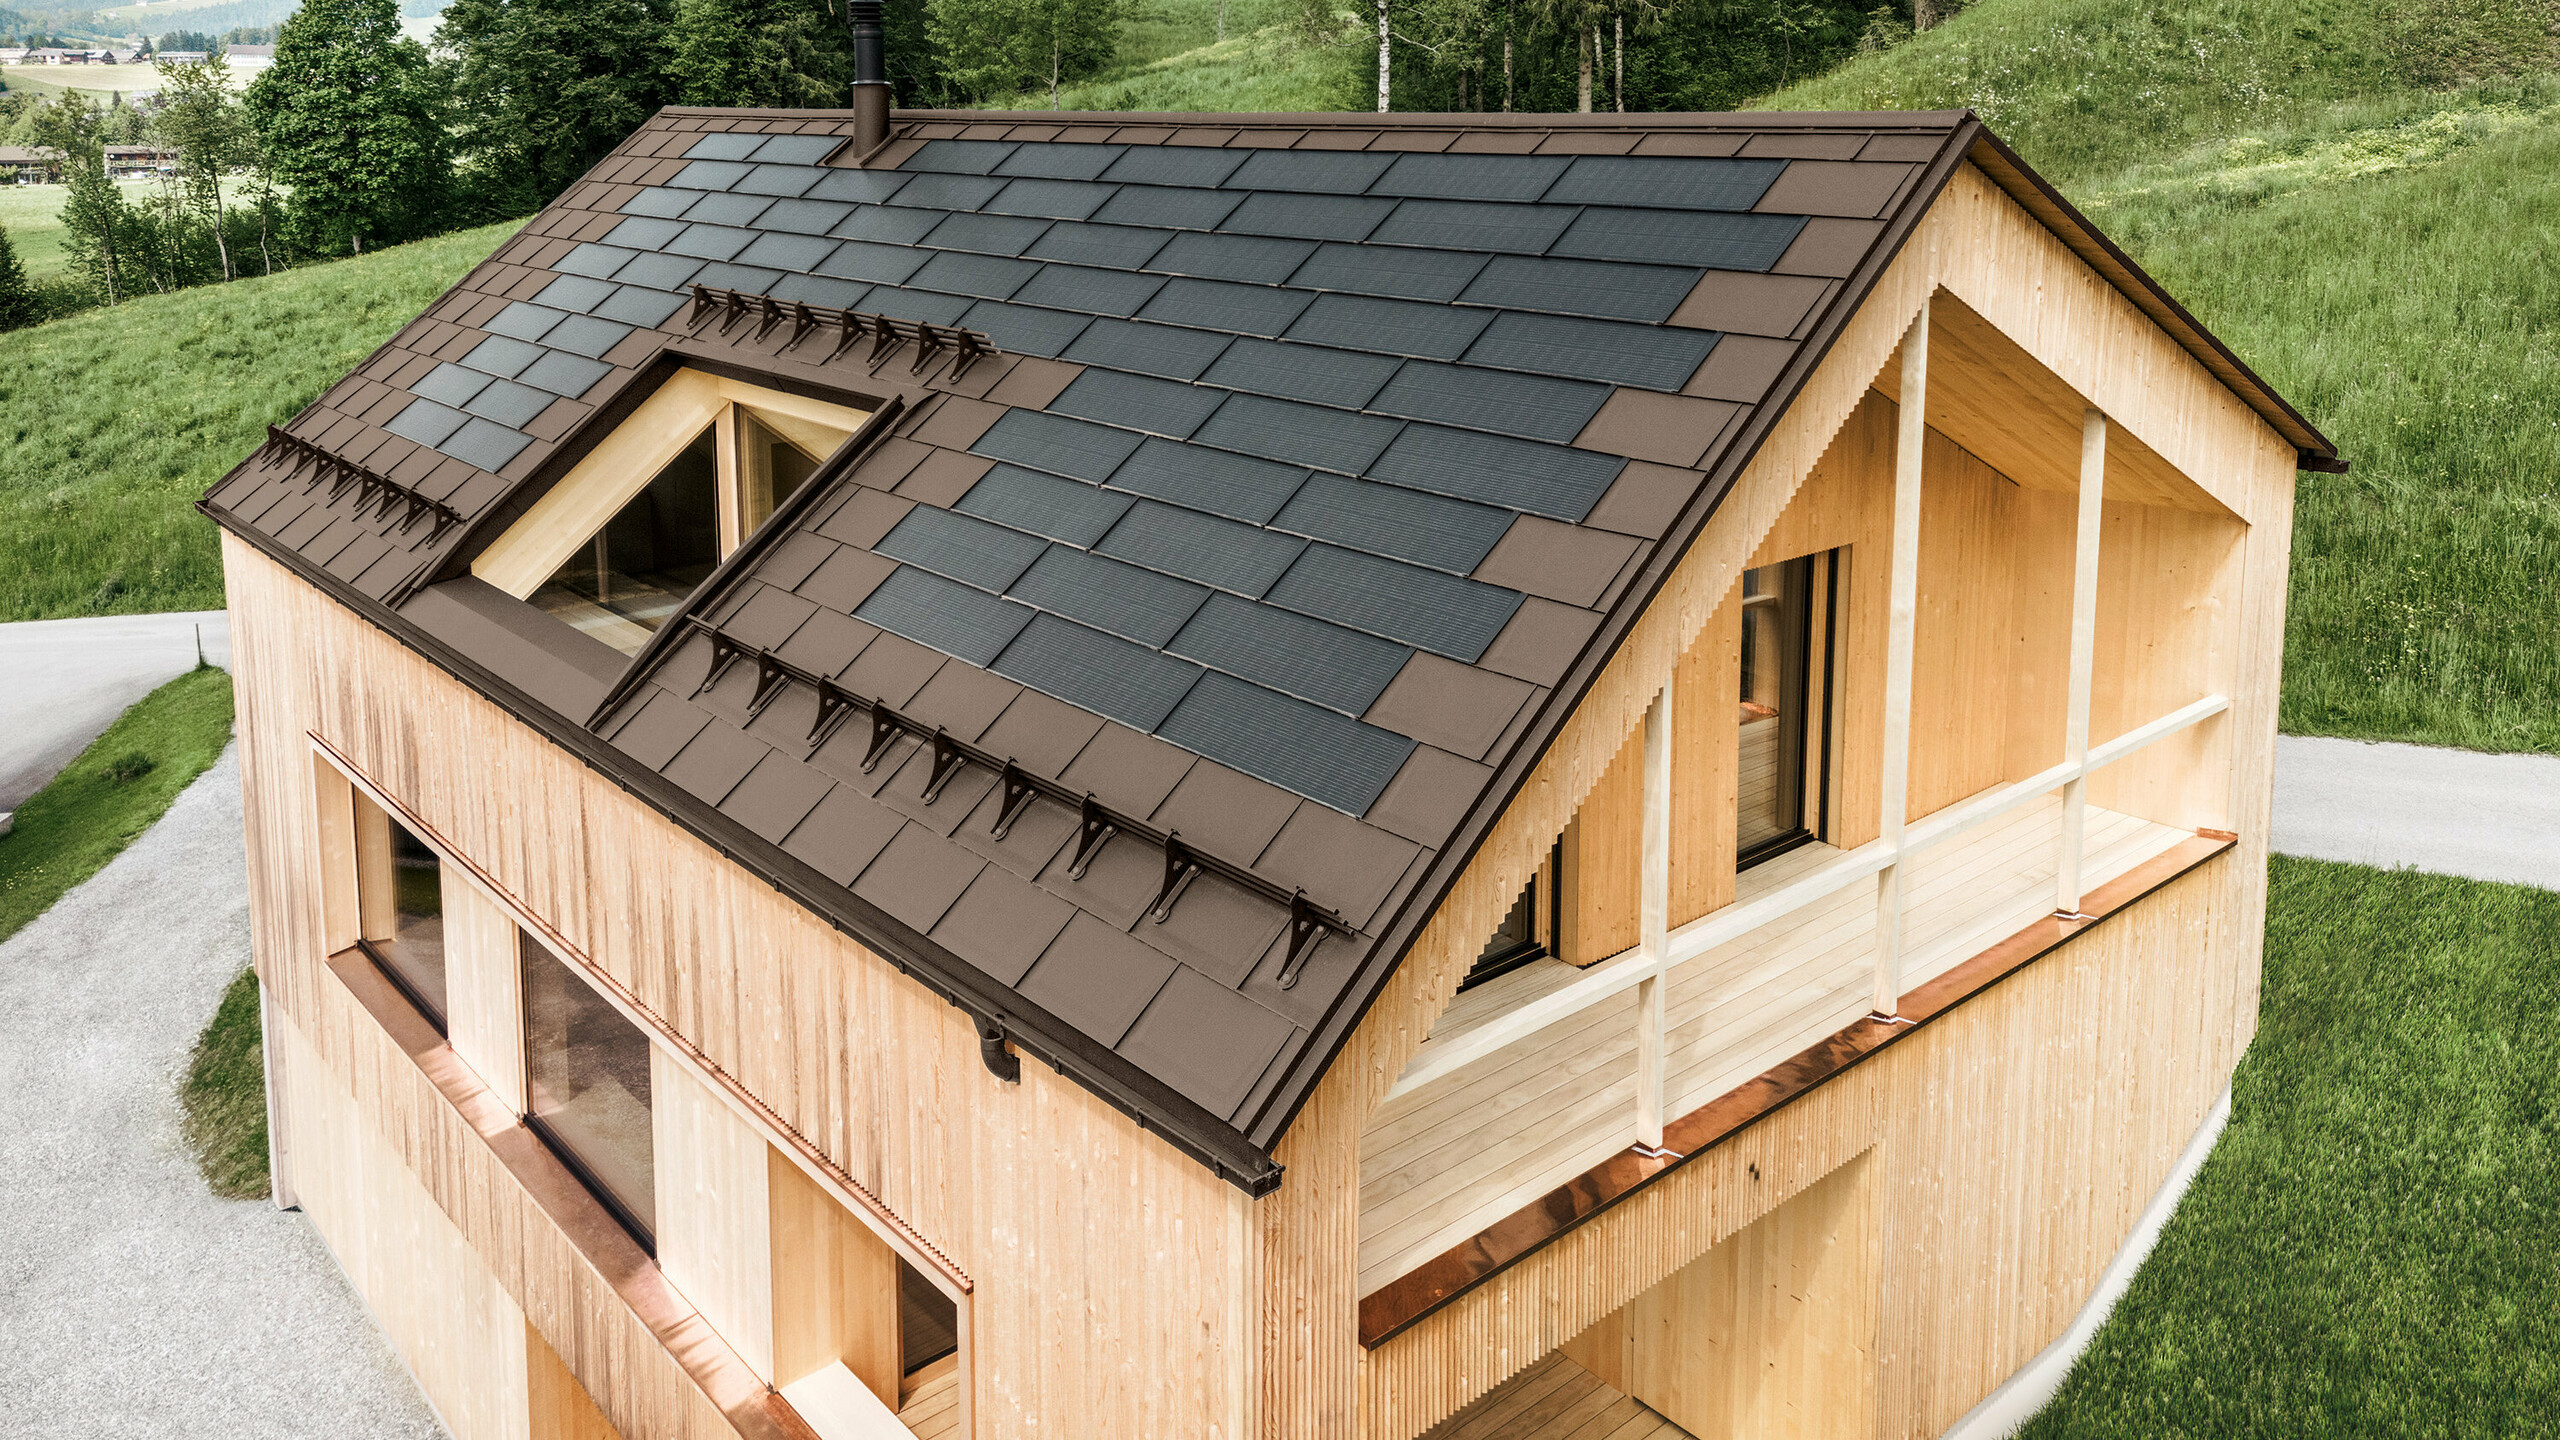 Einfamilienhaus im österreichischen Ort Egg mit der PREFA Solardachplatte und der Dachplatte R.16 in Braun, kombiniert mit einer Holzfassade